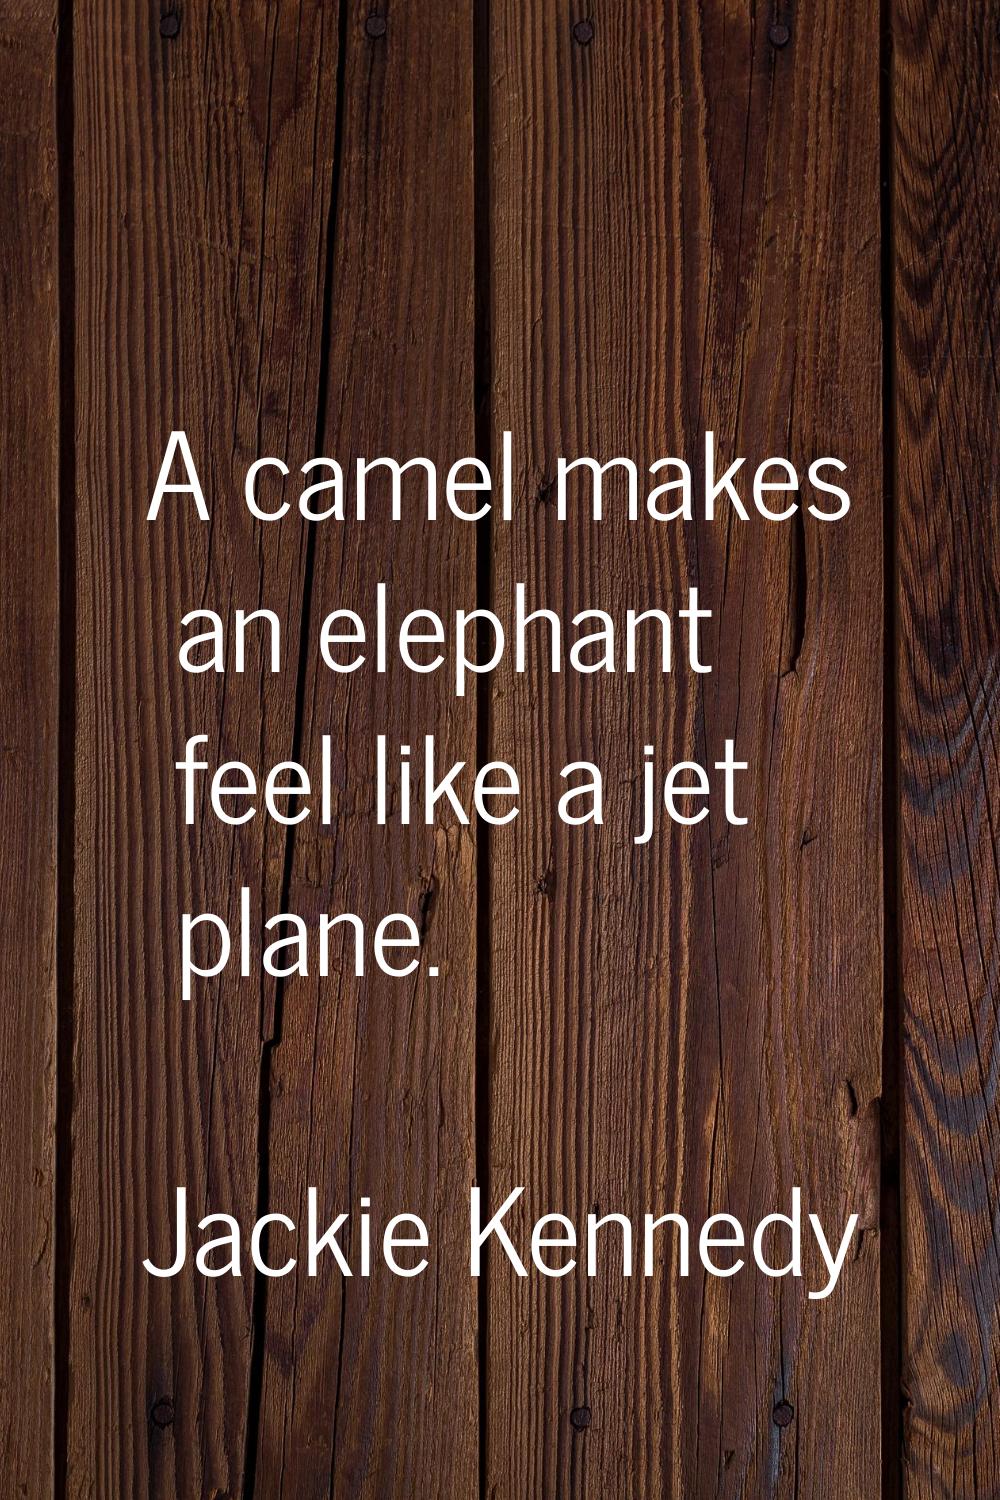 A camel makes an elephant feel like a jet plane.